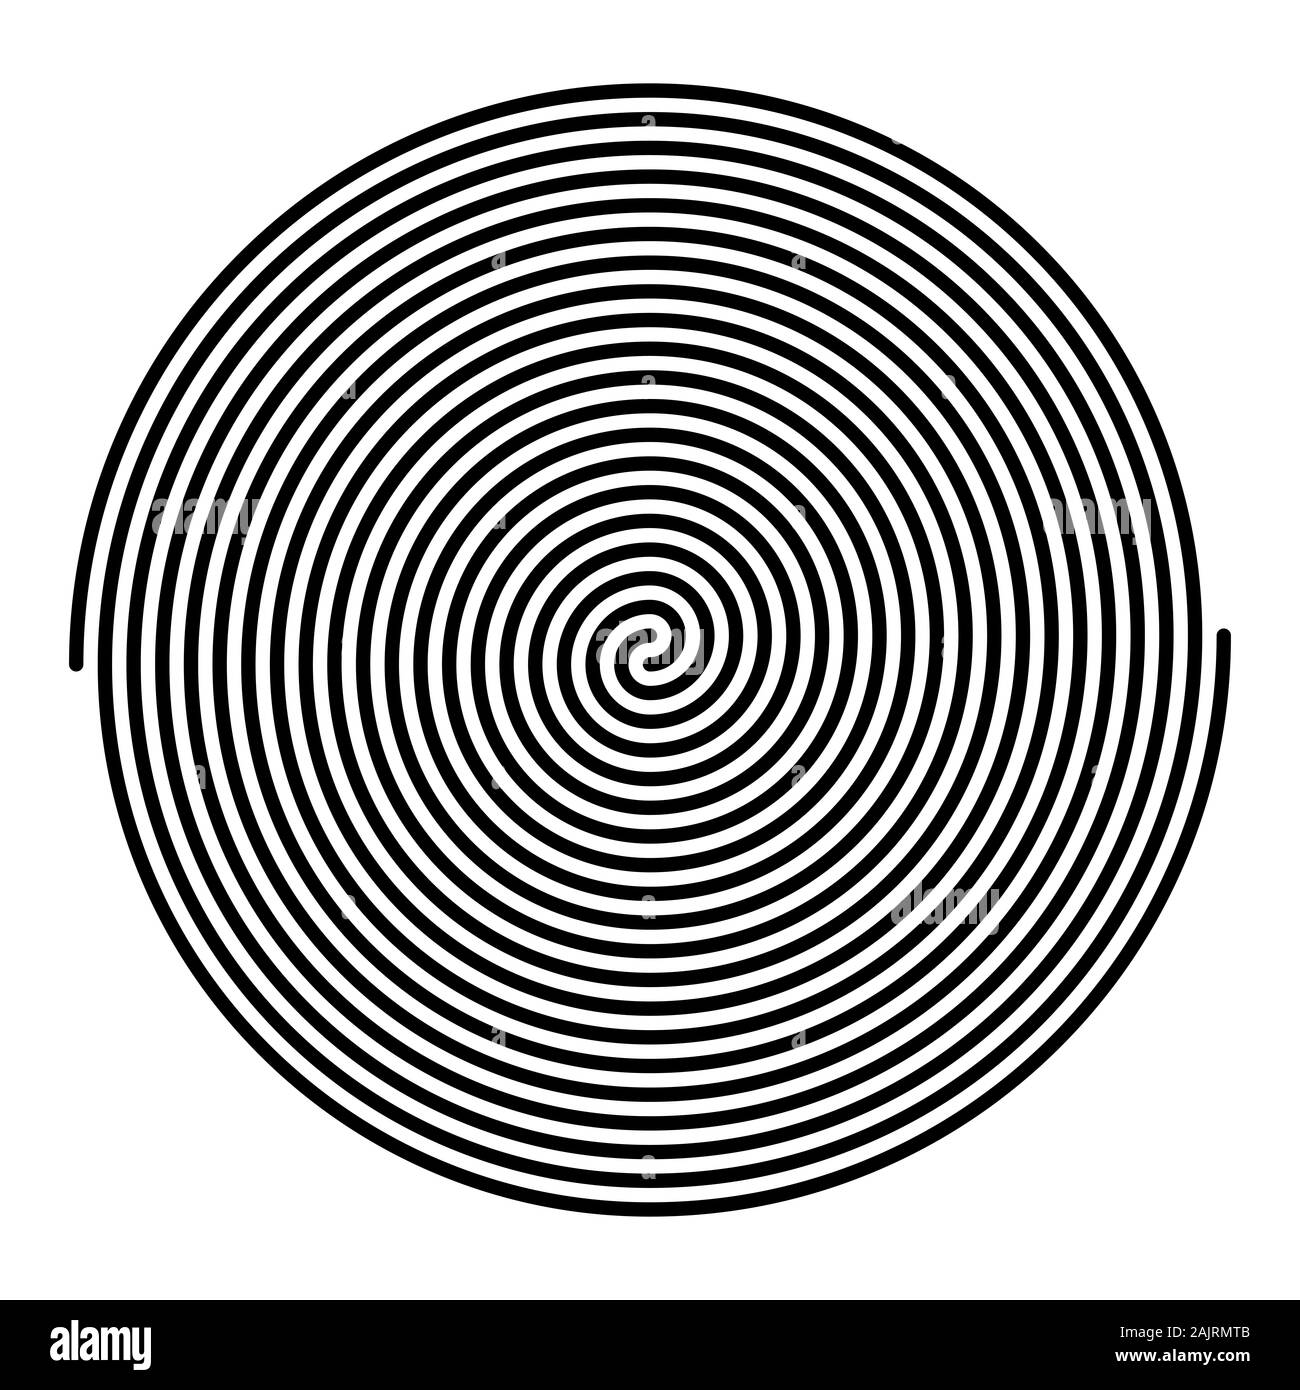 Deux spirales linéaires de grande taille. Les spirales d'archimède de couleur noire avec des tournures dix deux branches de l'arithmétique de spirales. Banque D'Images